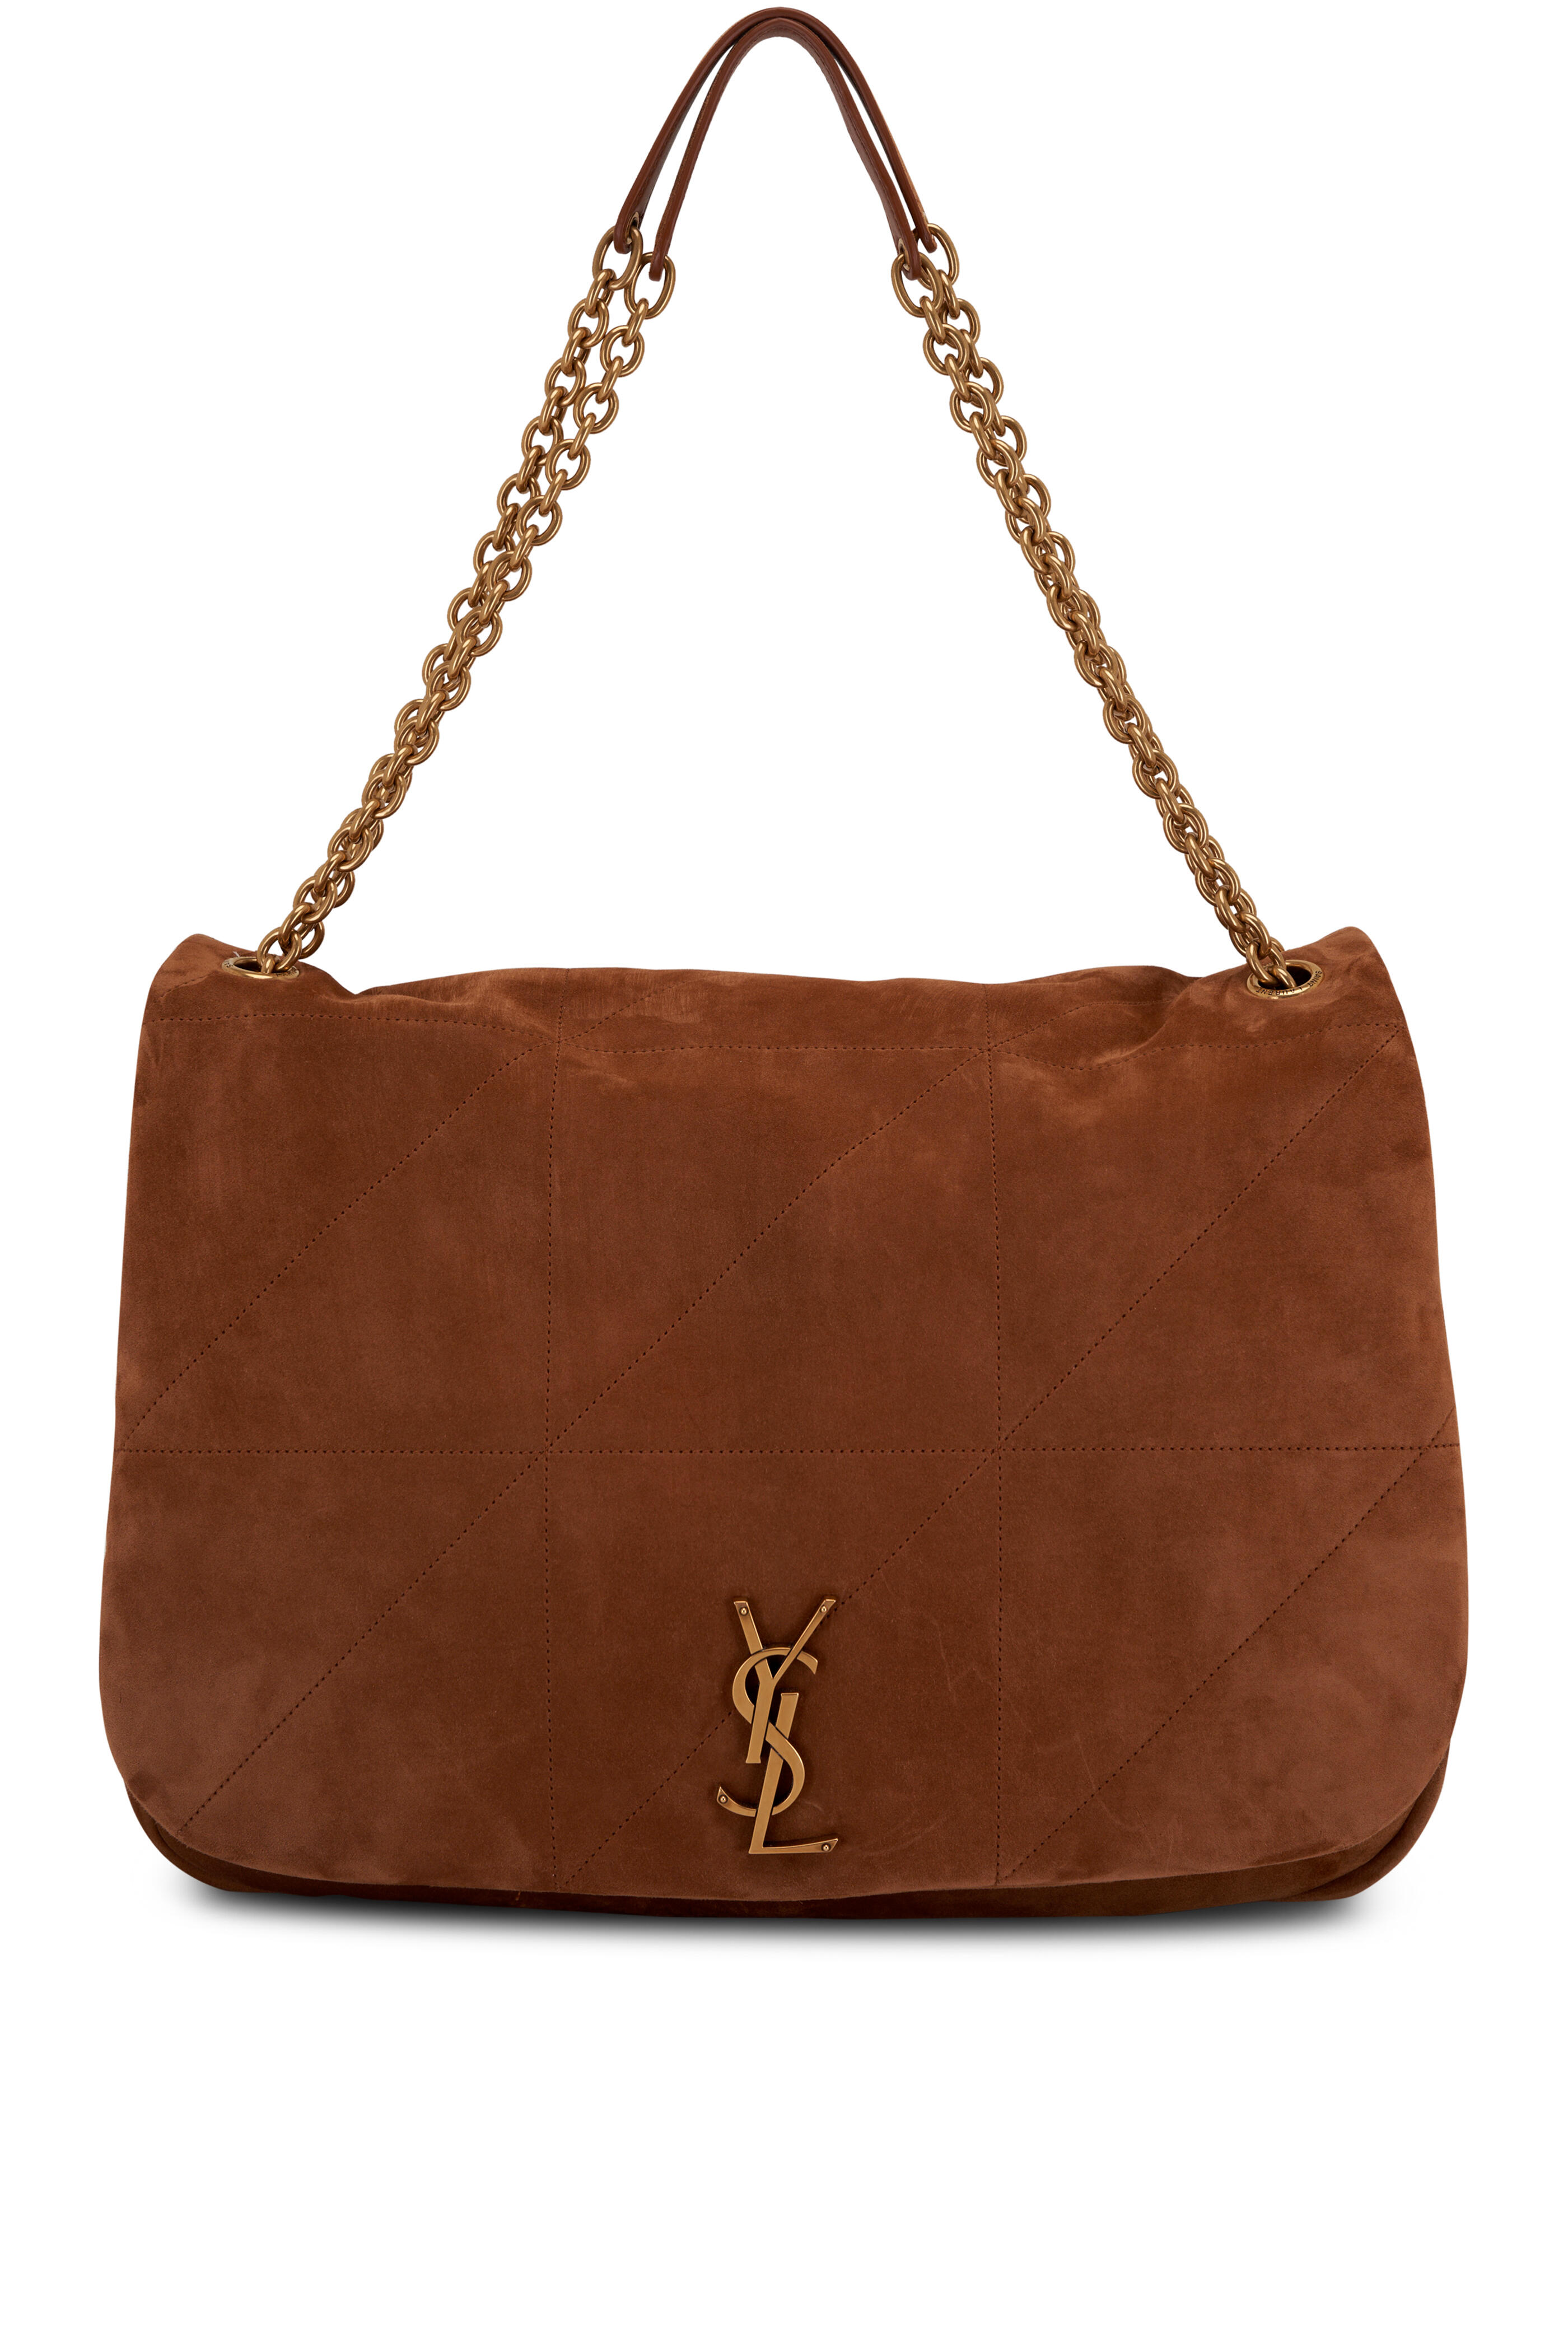 Saint Laurent Monogram Ysl V-Flap Shoulder Bag